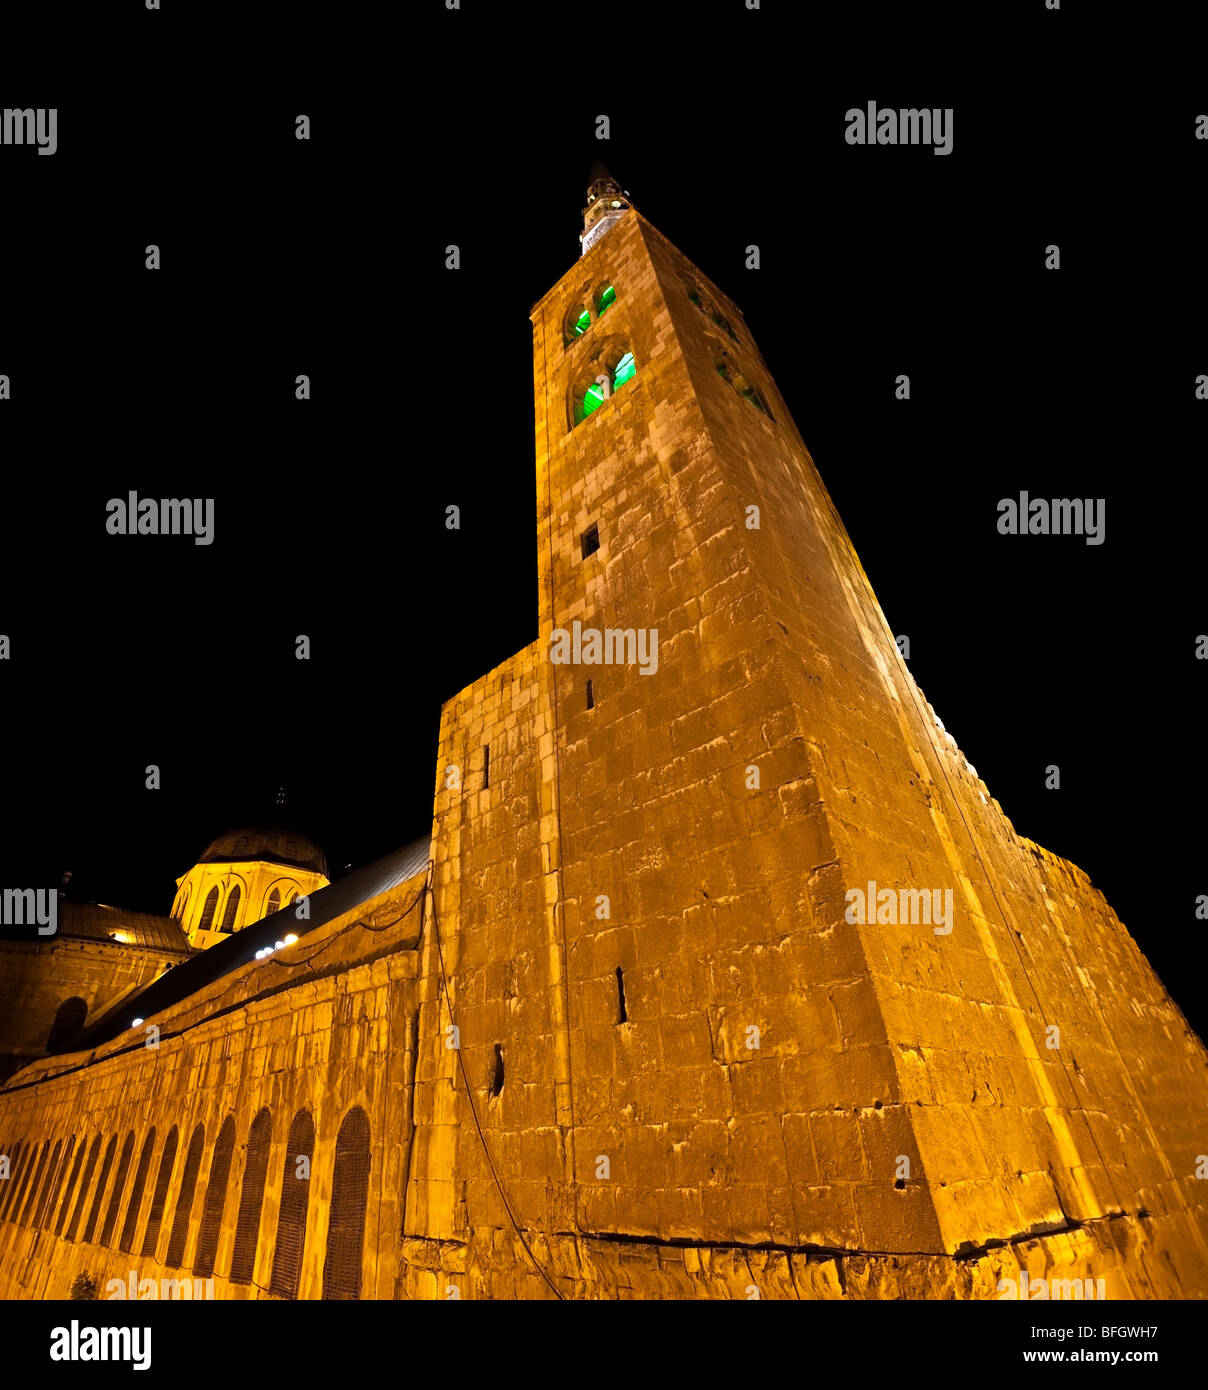 The Umayyad (Omayyad) Mosque tower in Damascus, Syria. Stock Photo